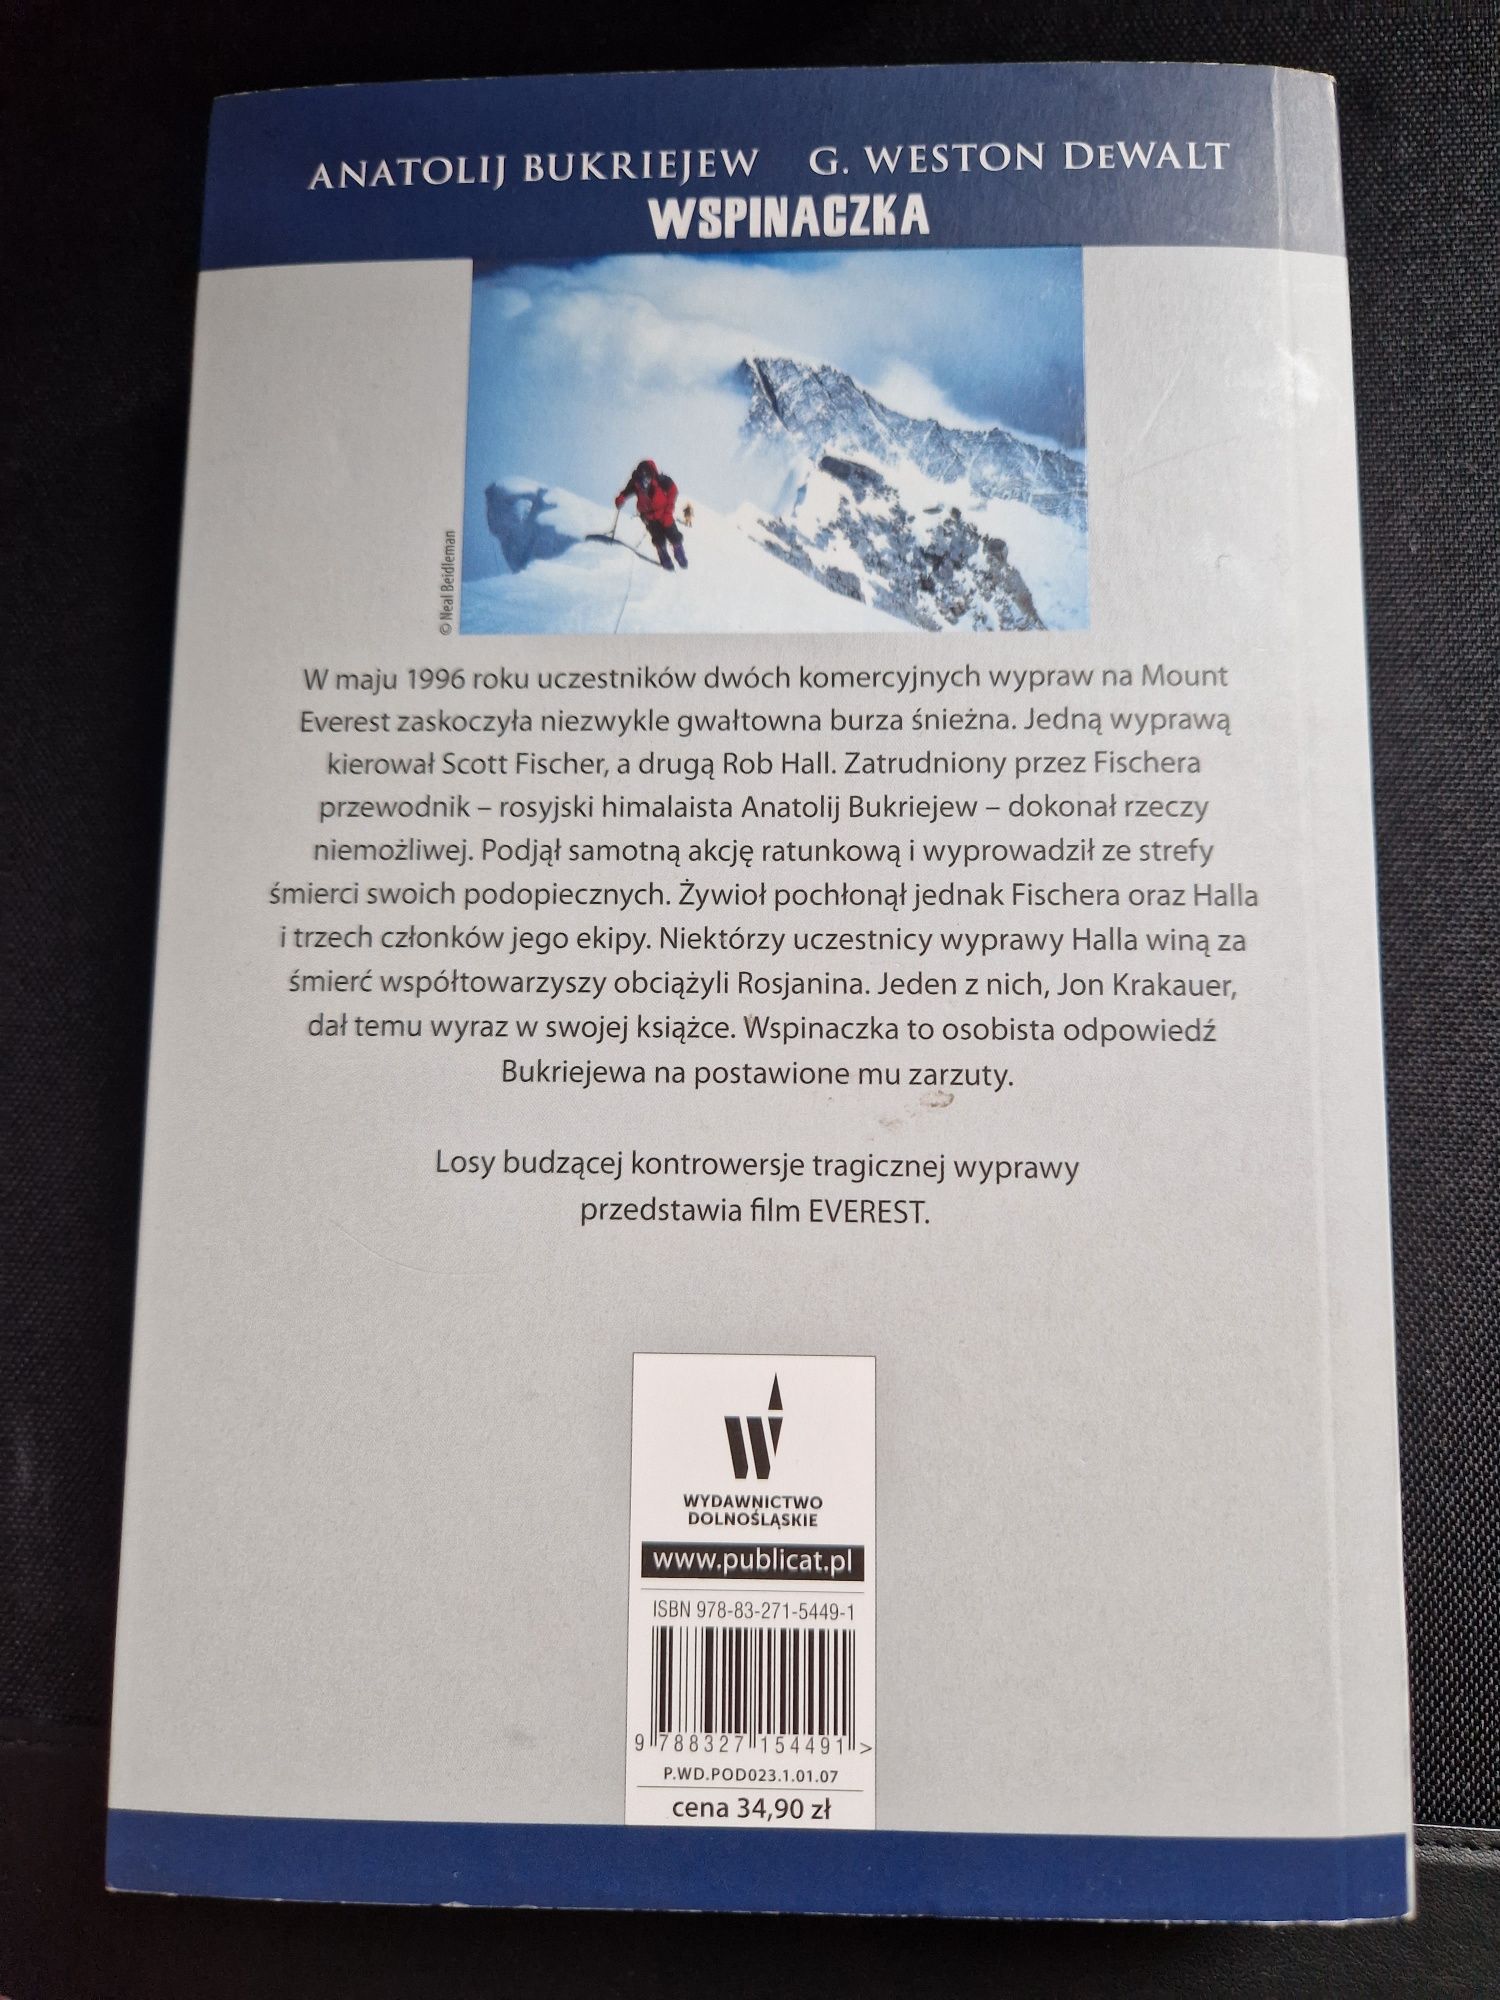 Wspinaczka relacją z tragicznej wyprawy na Everest Anatolij Bukriejew